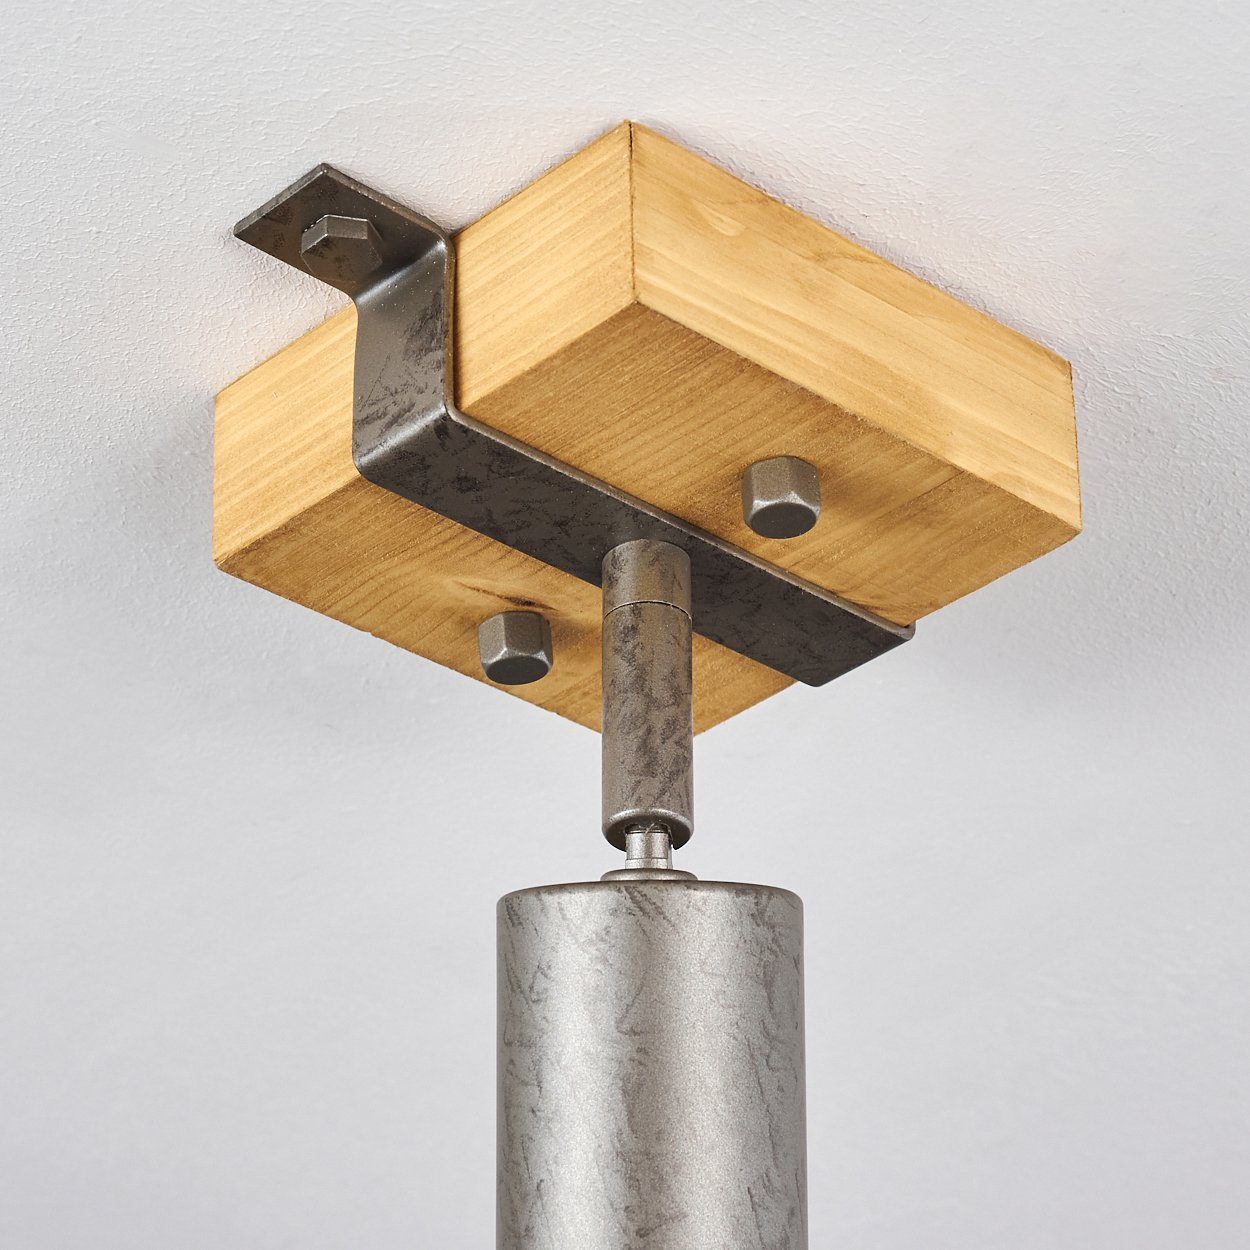 Grau/Natur, ohne hofstein Fassung, in 1xE27 Deckenleuchte im Metall/Holz aus Leuchtmittel, Wandlampe »Faro« Wandspot Industrial-Design verstellbare